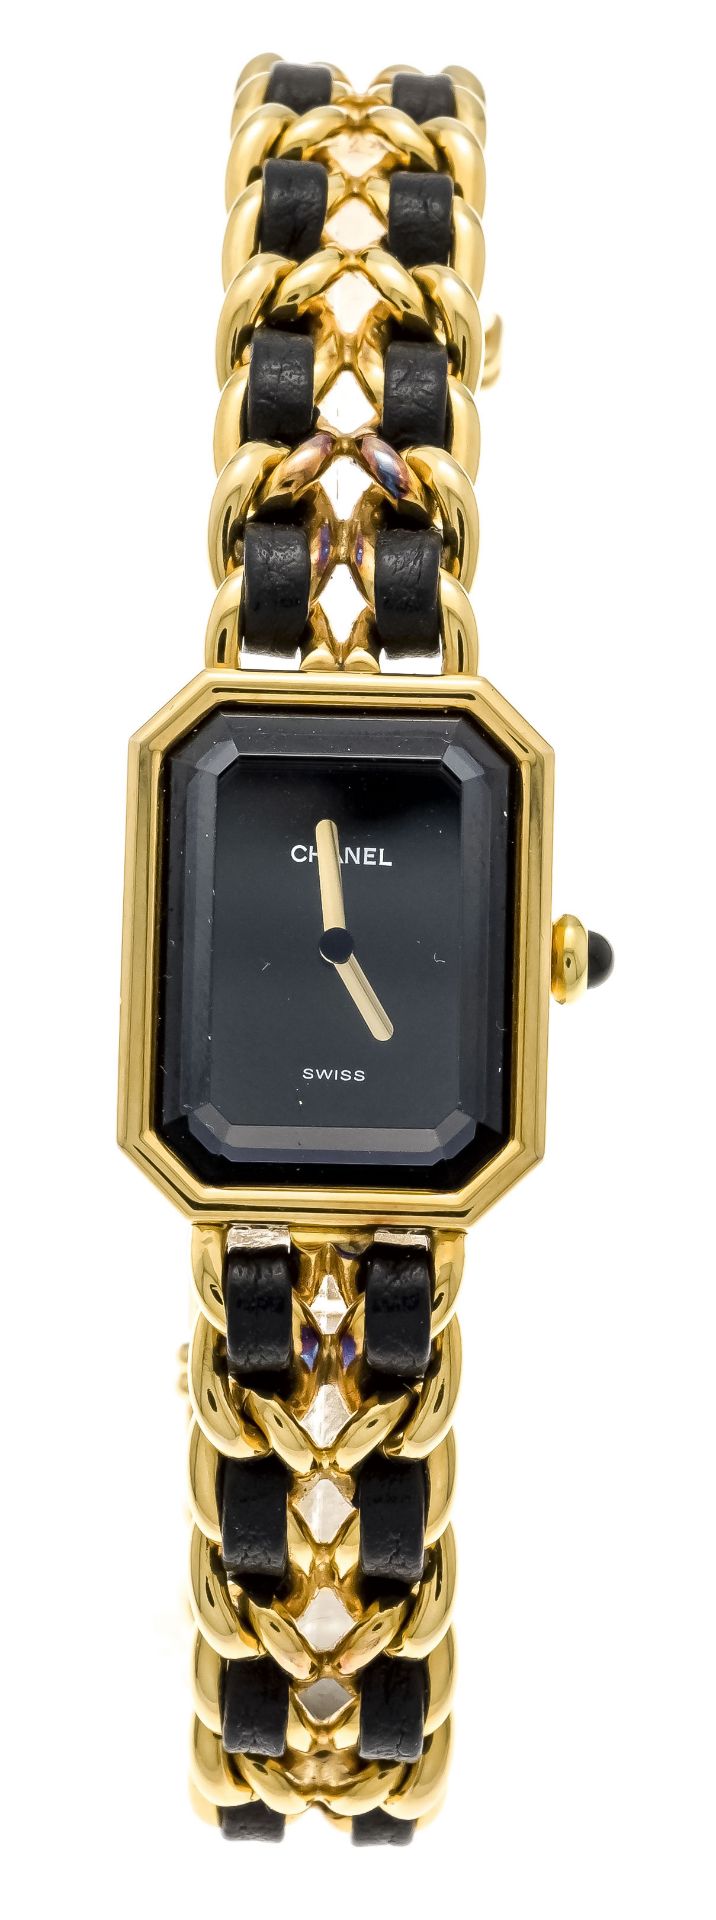 Chanel Paris Premiere L size H0001, ladies quartz watch, plaque 20ym, Ref. 34656 circa 1985, strap